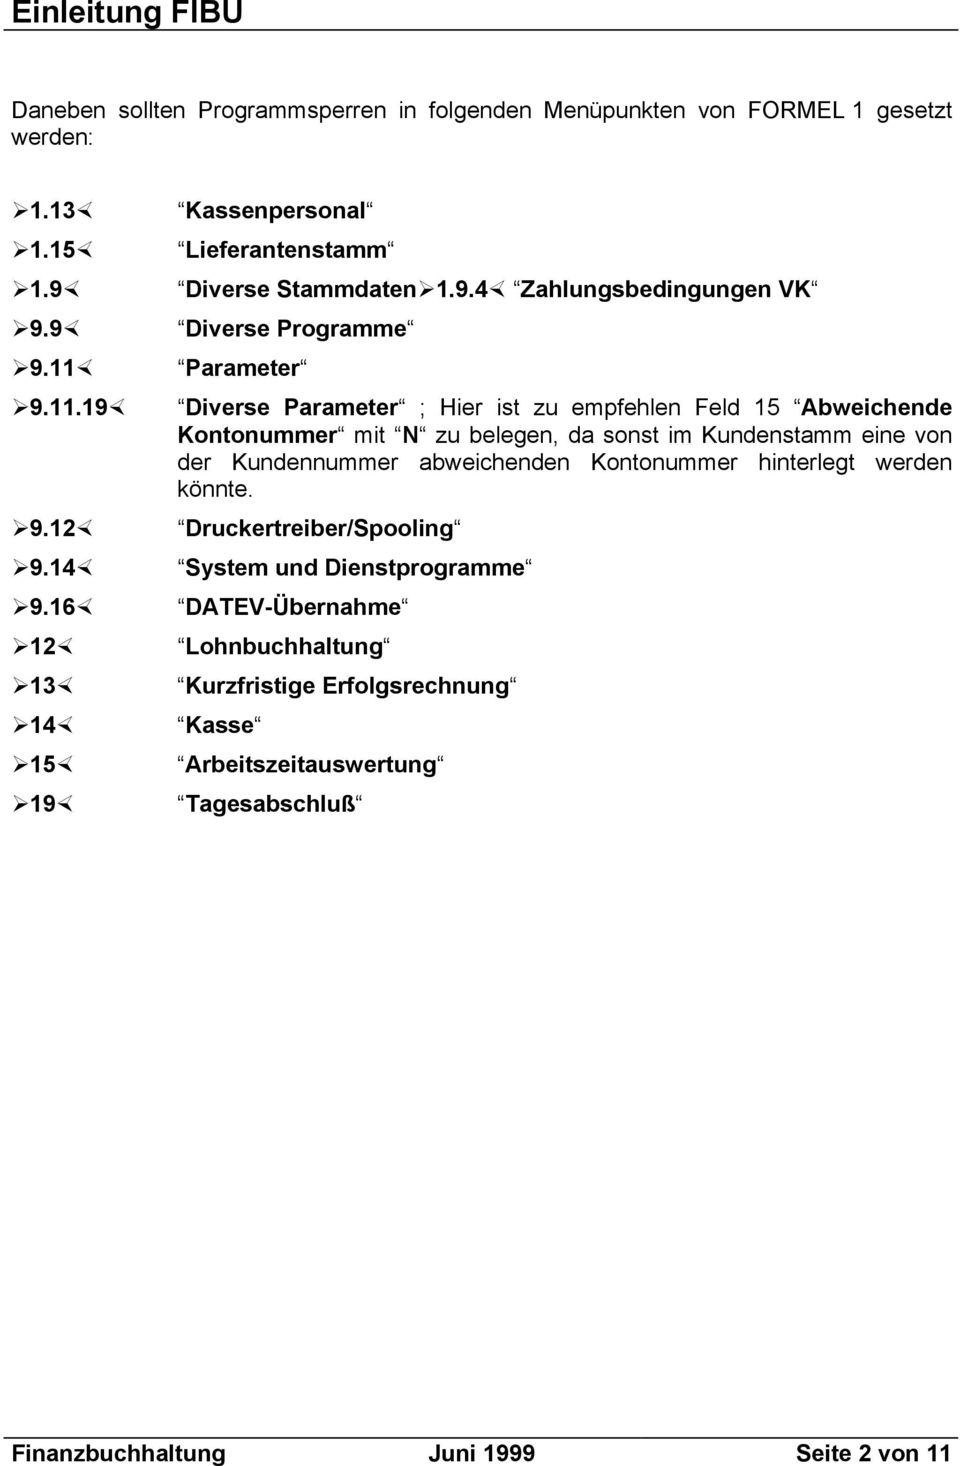 Kassenpersonal Lieferantenstamm Diverse Stammdaten 1.9.